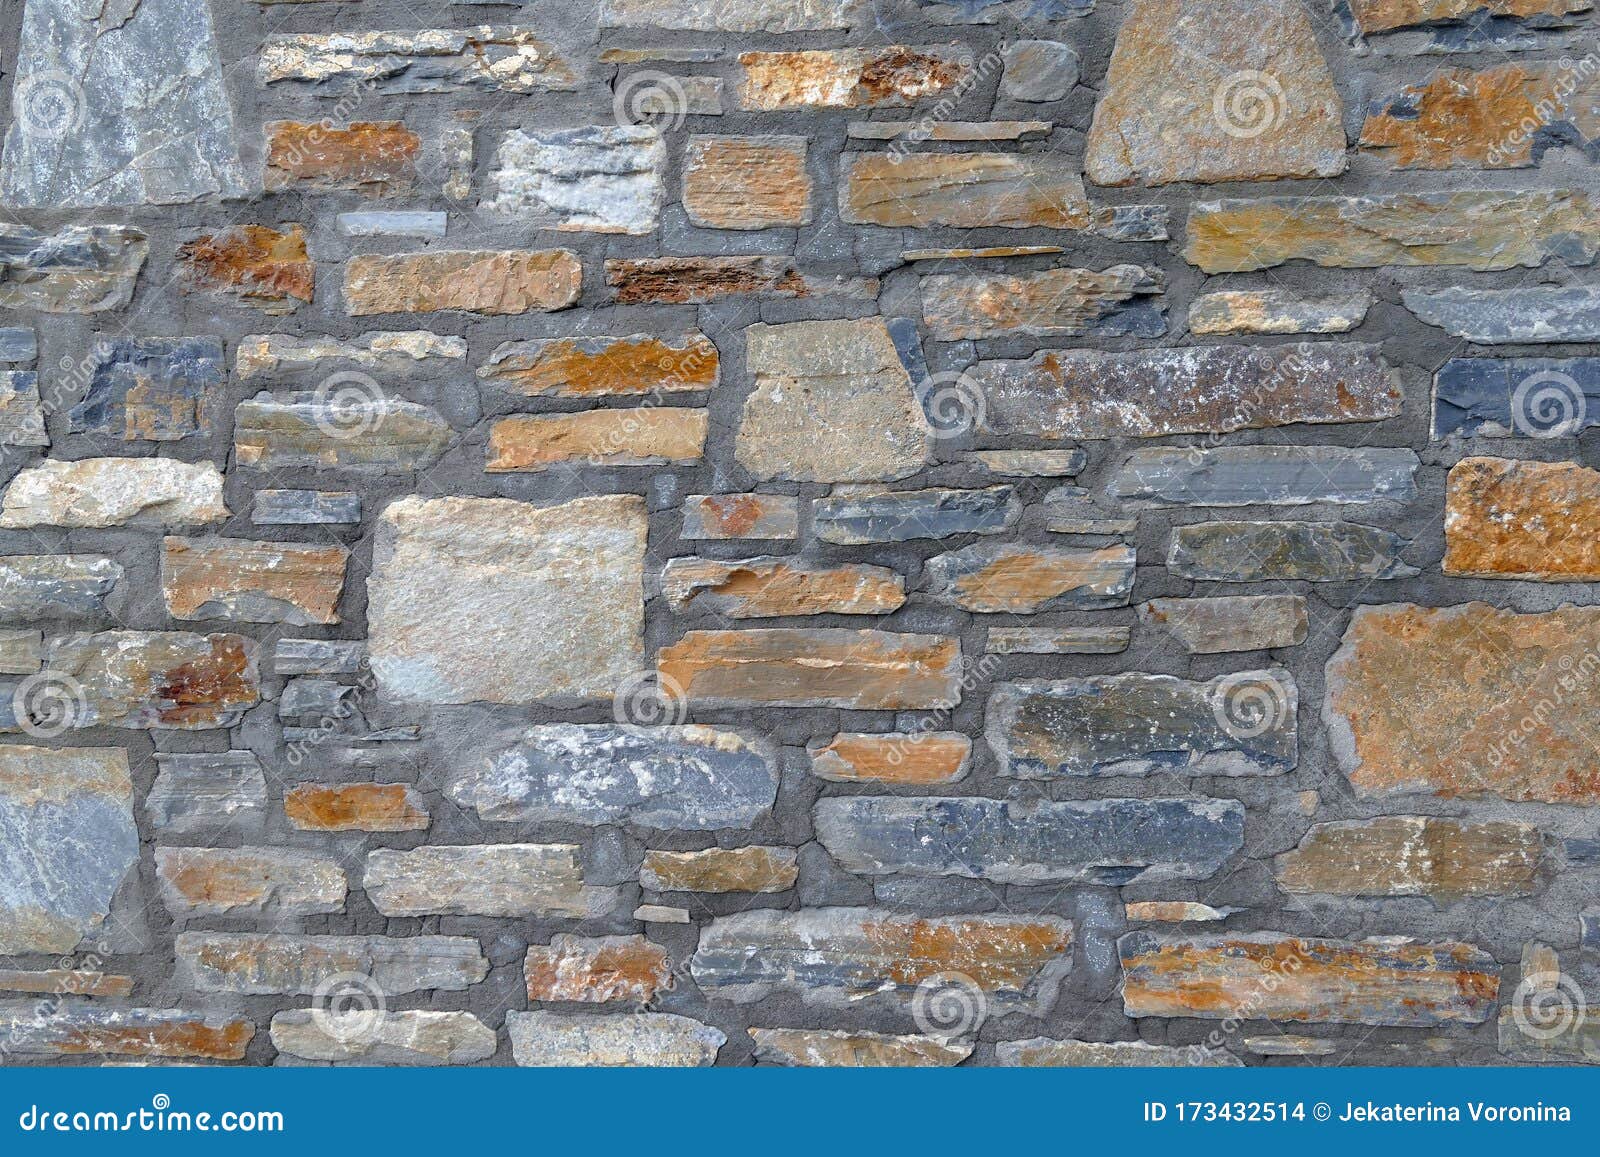 Muro de pedras irregulares